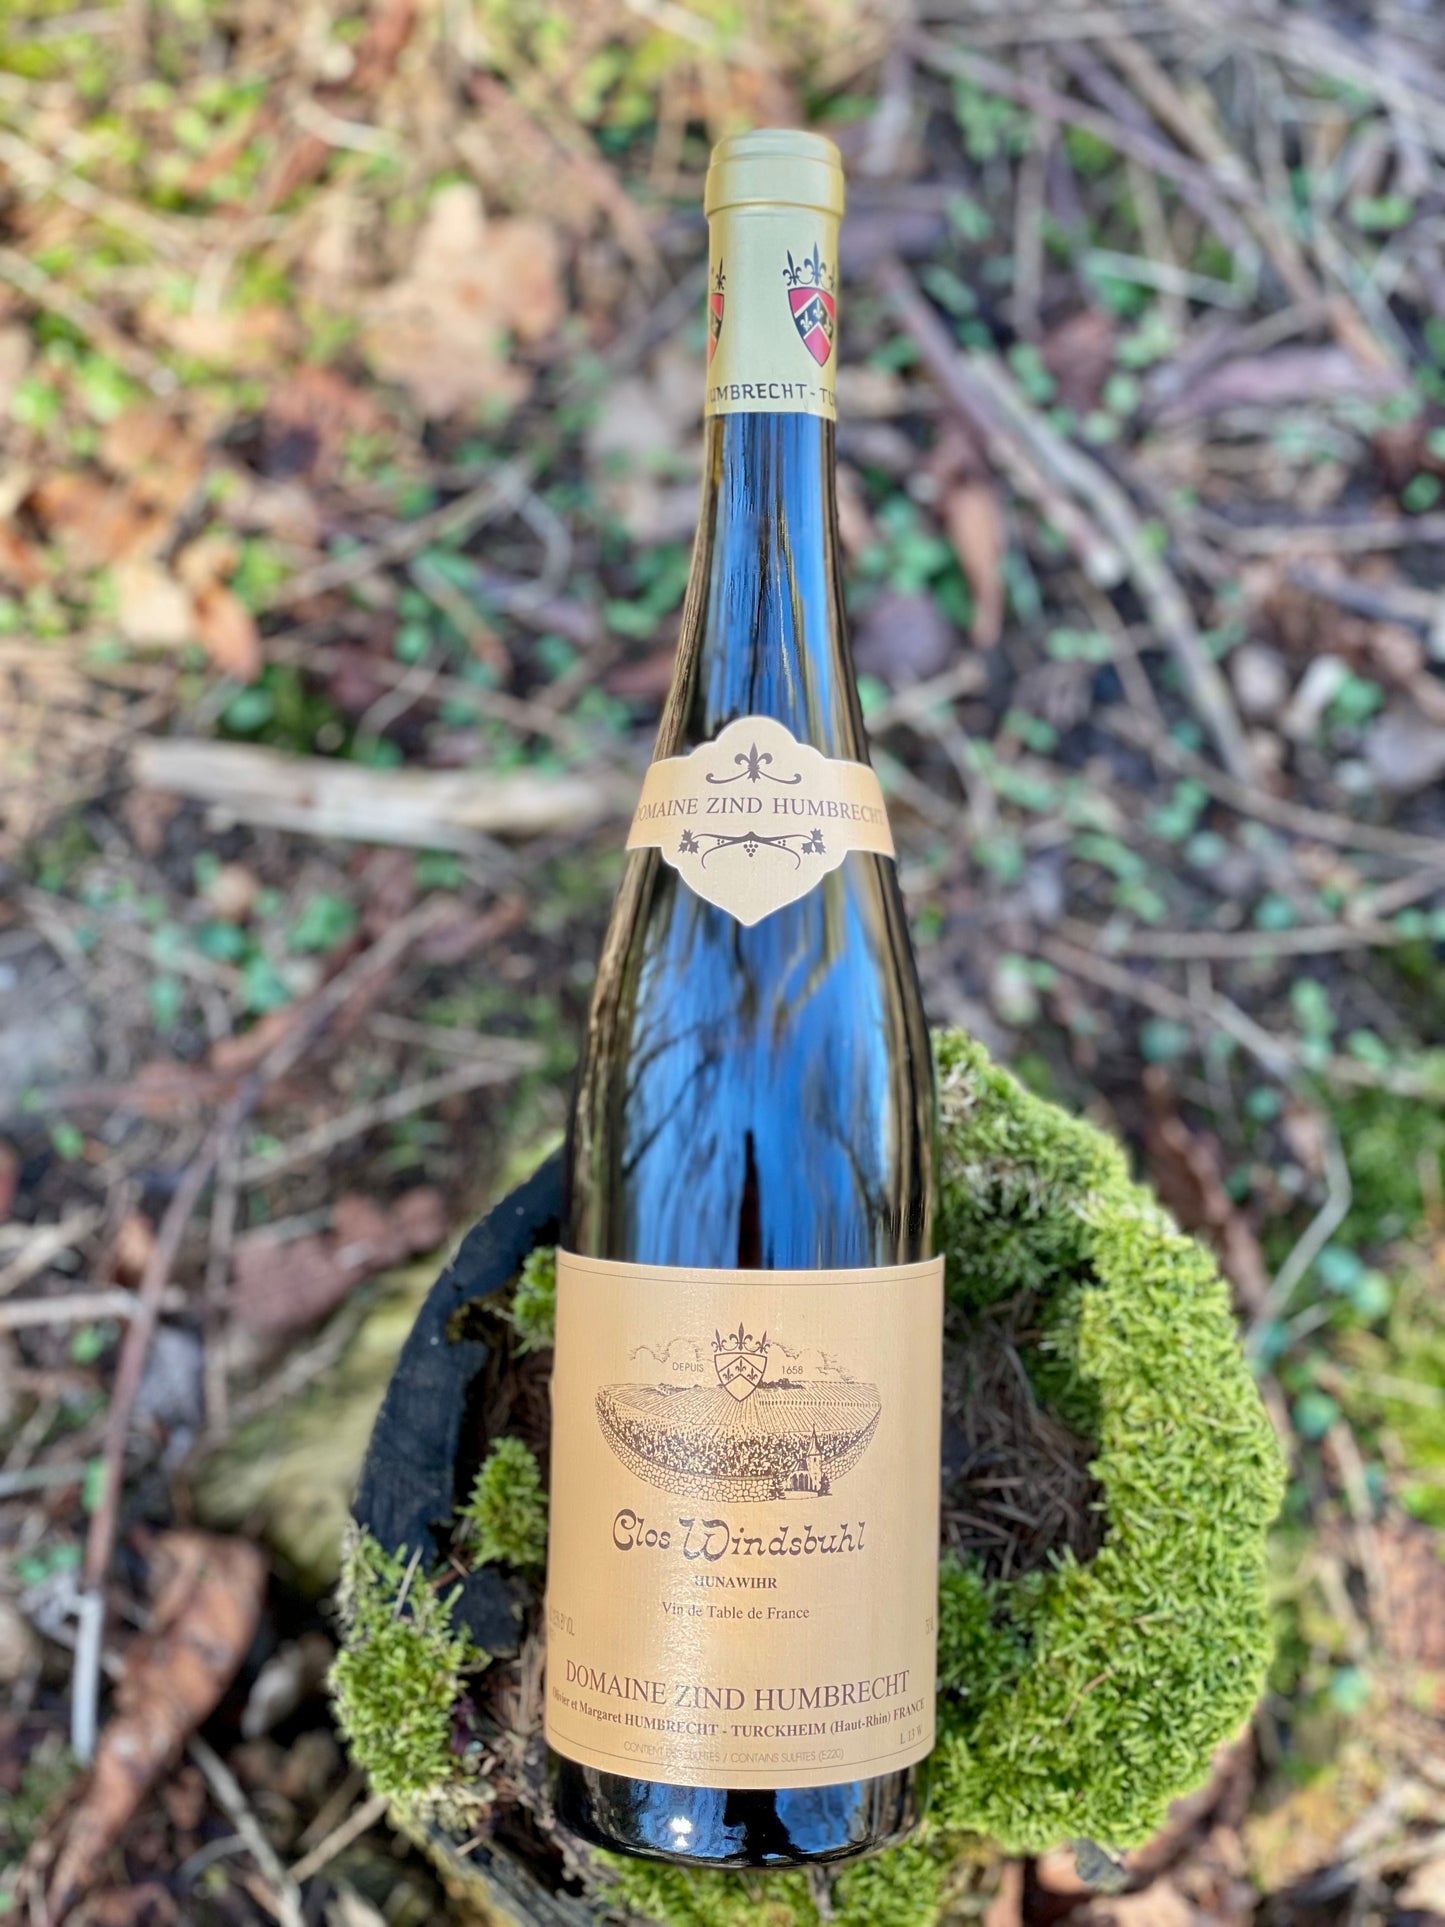 2018 Chardonnay “Clos Windsbuhl”